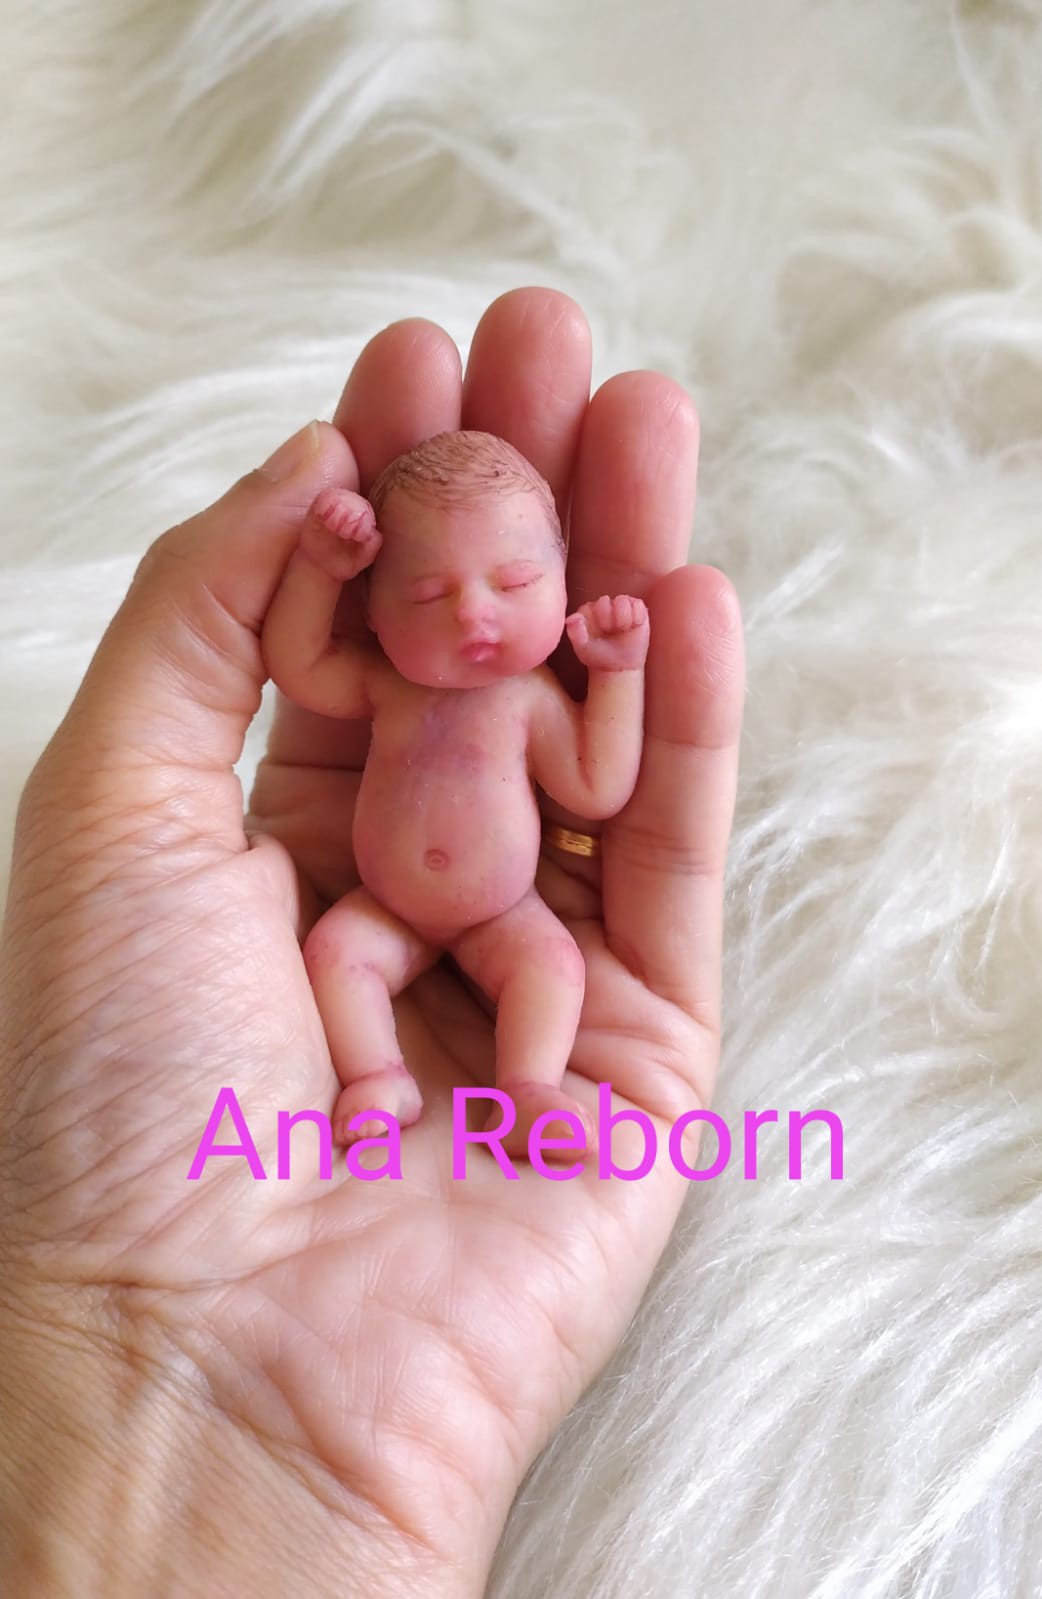 Baby Reborn Silicone, Bebe Reborn Silicone Solid